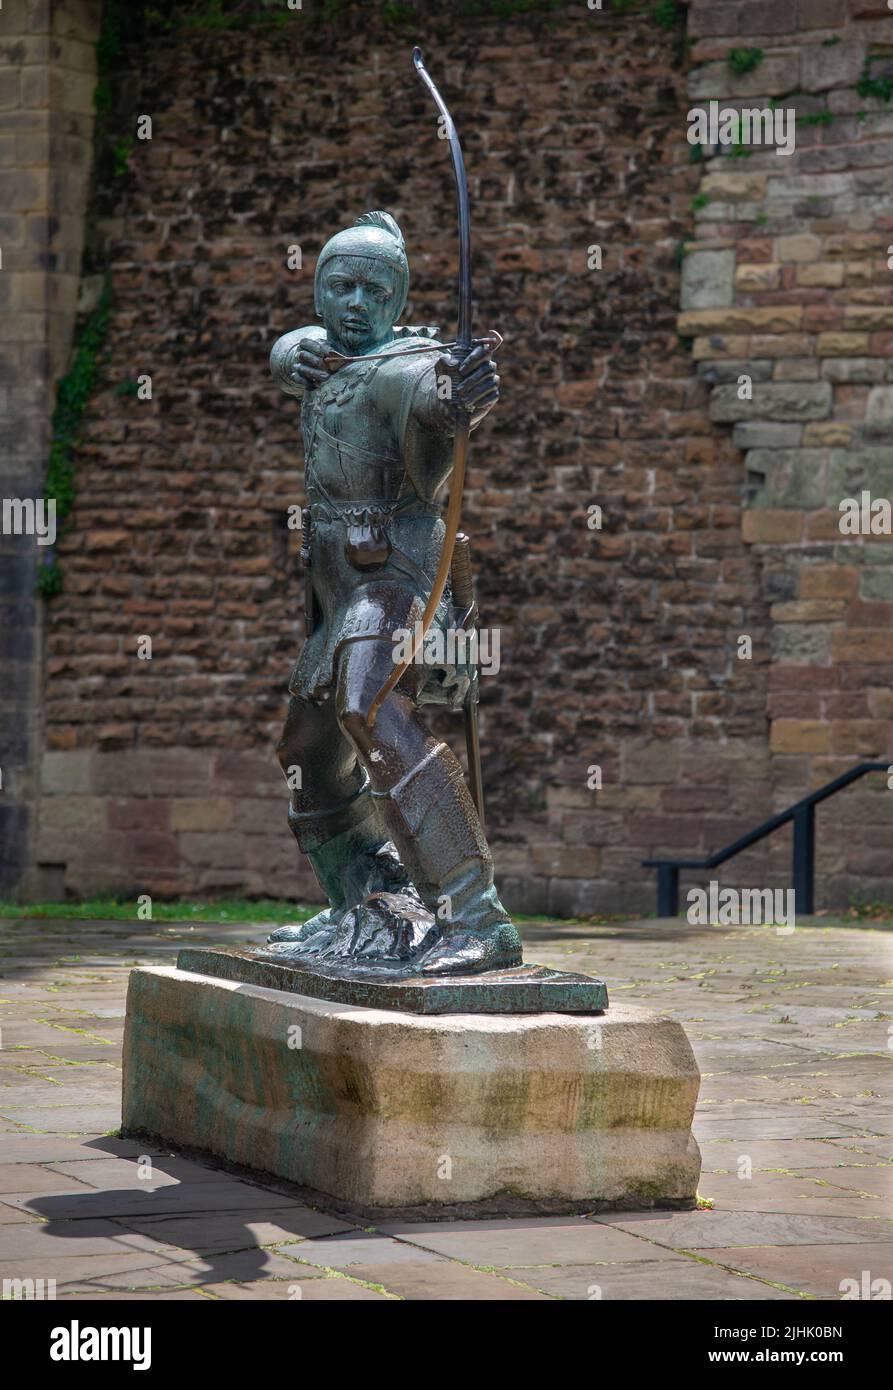 La estatua de Robin Hood se proyectó para durar 6000 años y se dio a conocer fuera del castillo de Nottingham en 1952 Foto de stock